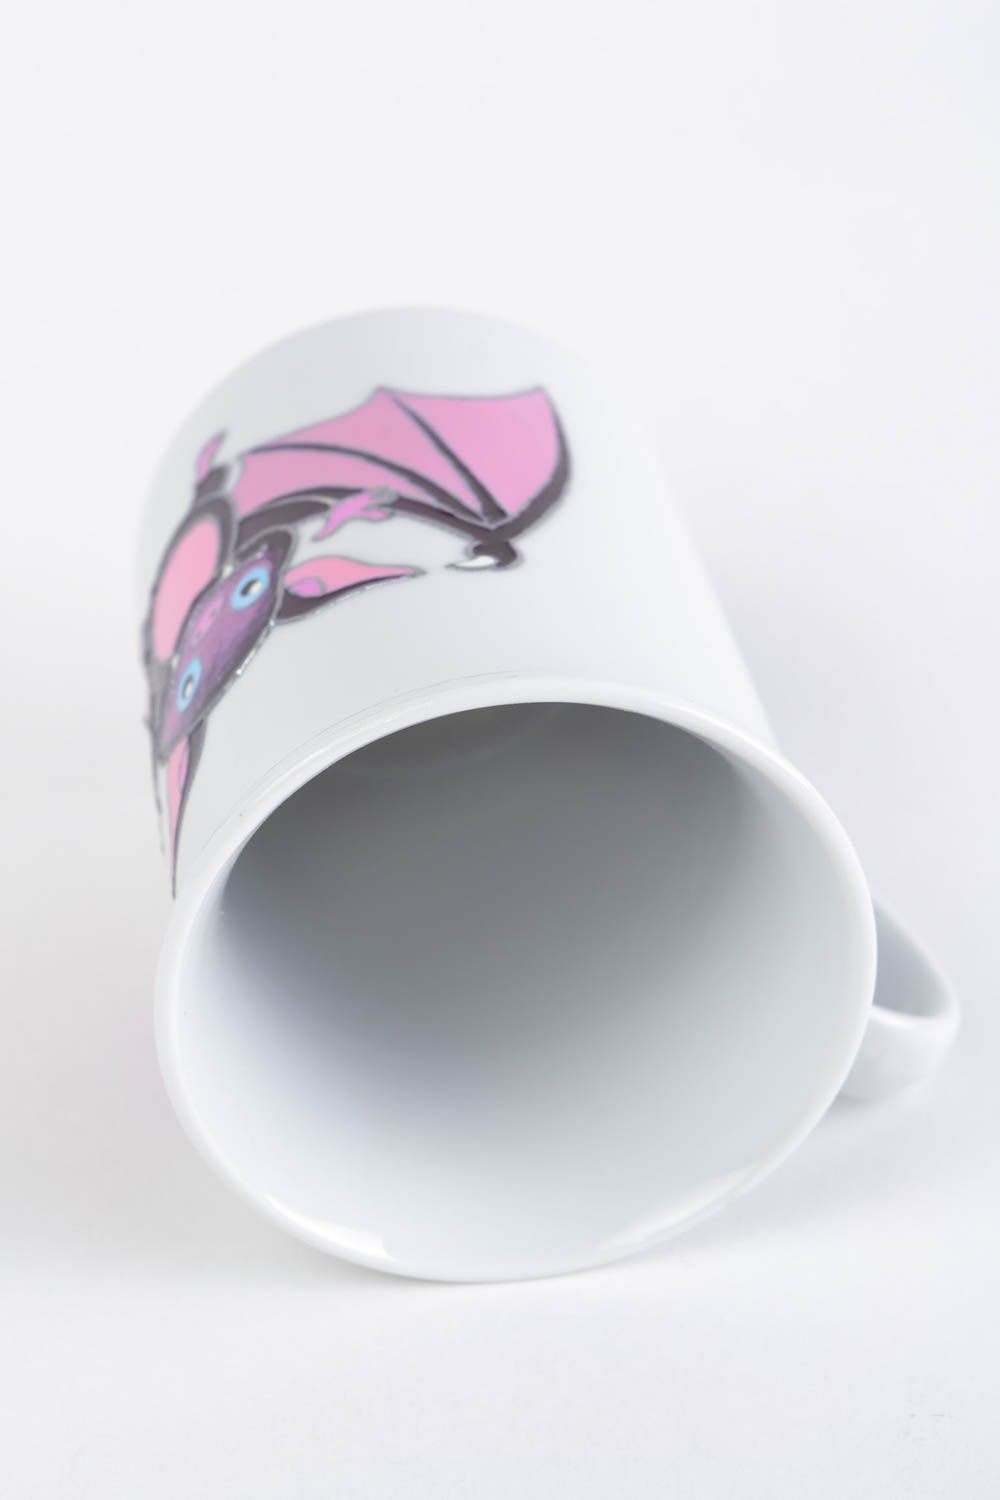 Керамическая чашка расписанная акриловыми красками вручную с мышью 300 мл  фото 5